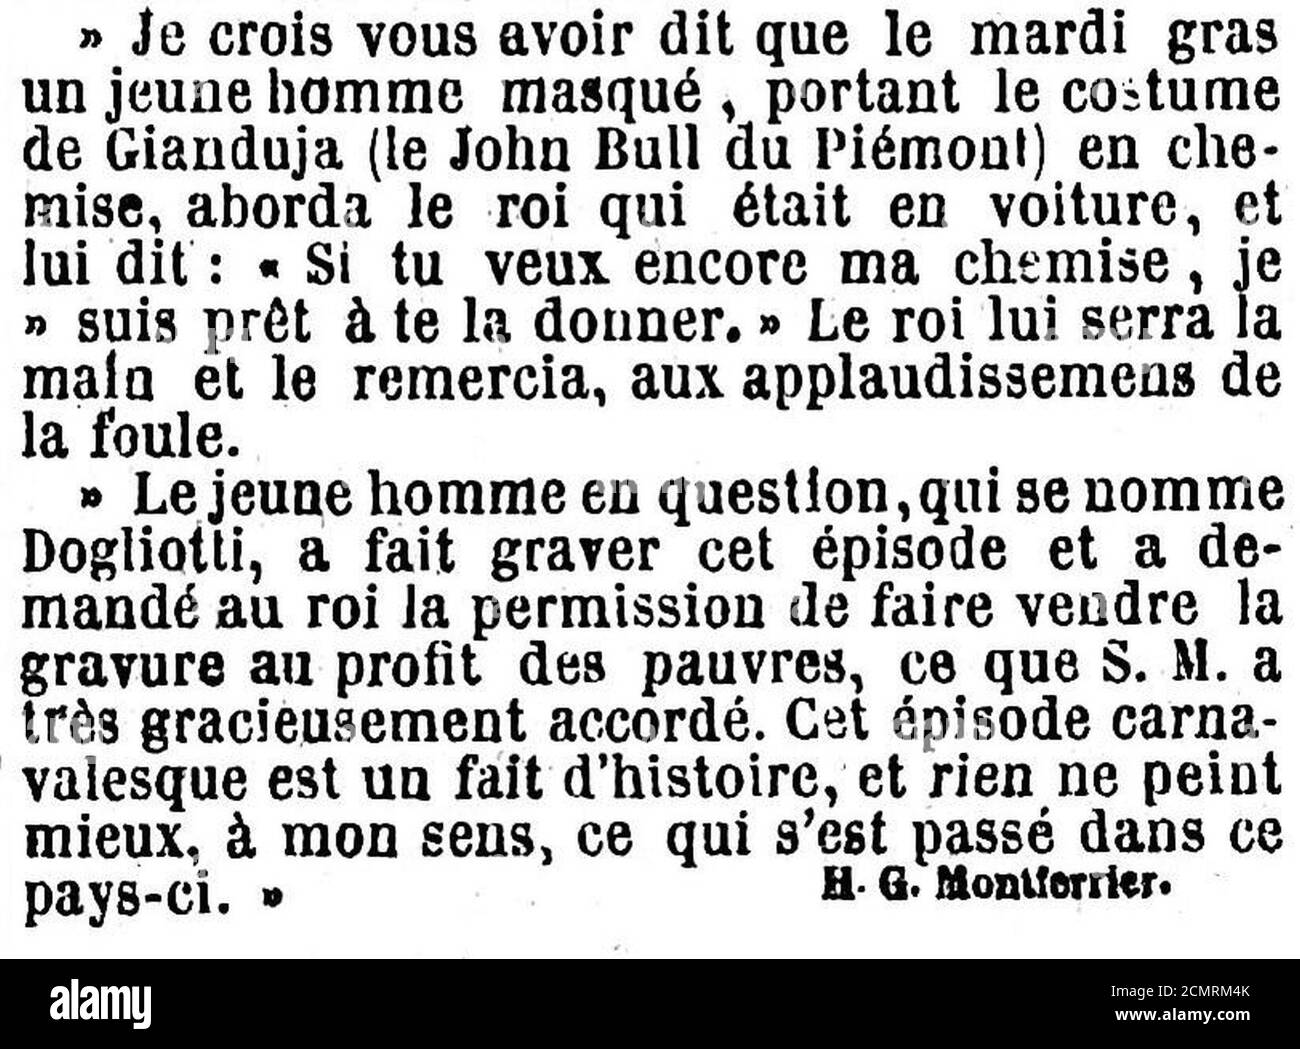 Journal des débats - 4 avril 1865 - Page 1, 3ème colonne - Un épisode du Carnaval de Turin. Stock Photo